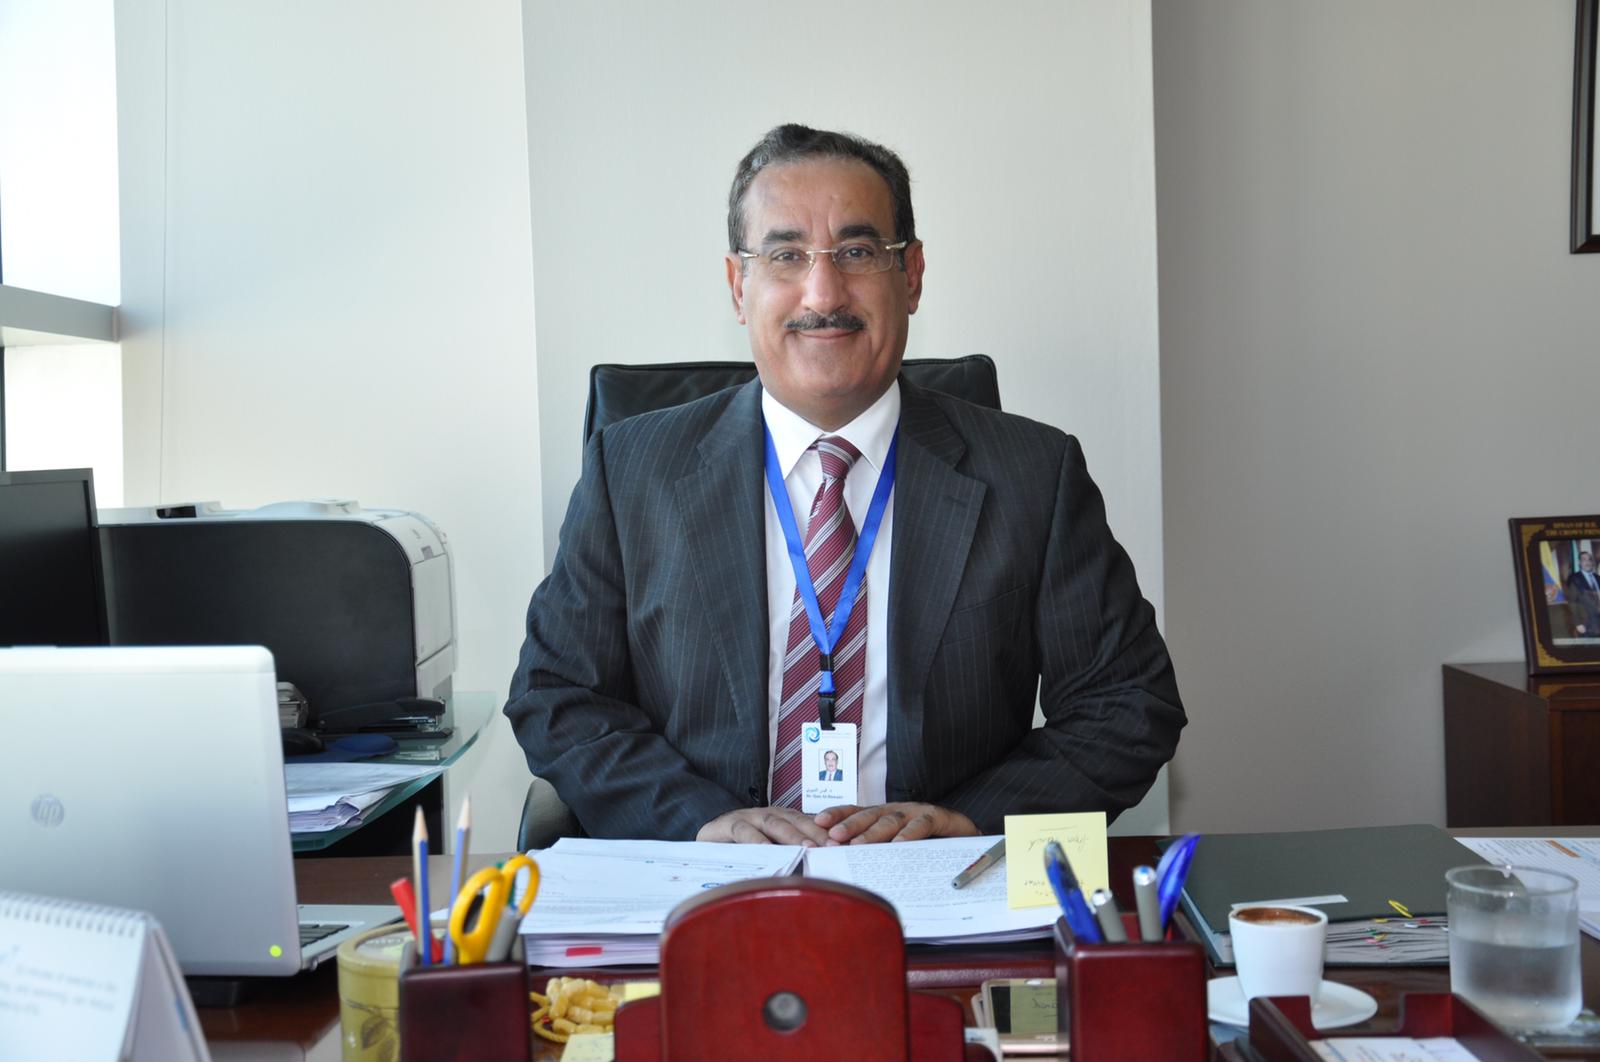 Director General of Dasman Diabetes Institute Dr. Qais Al-Duwairi